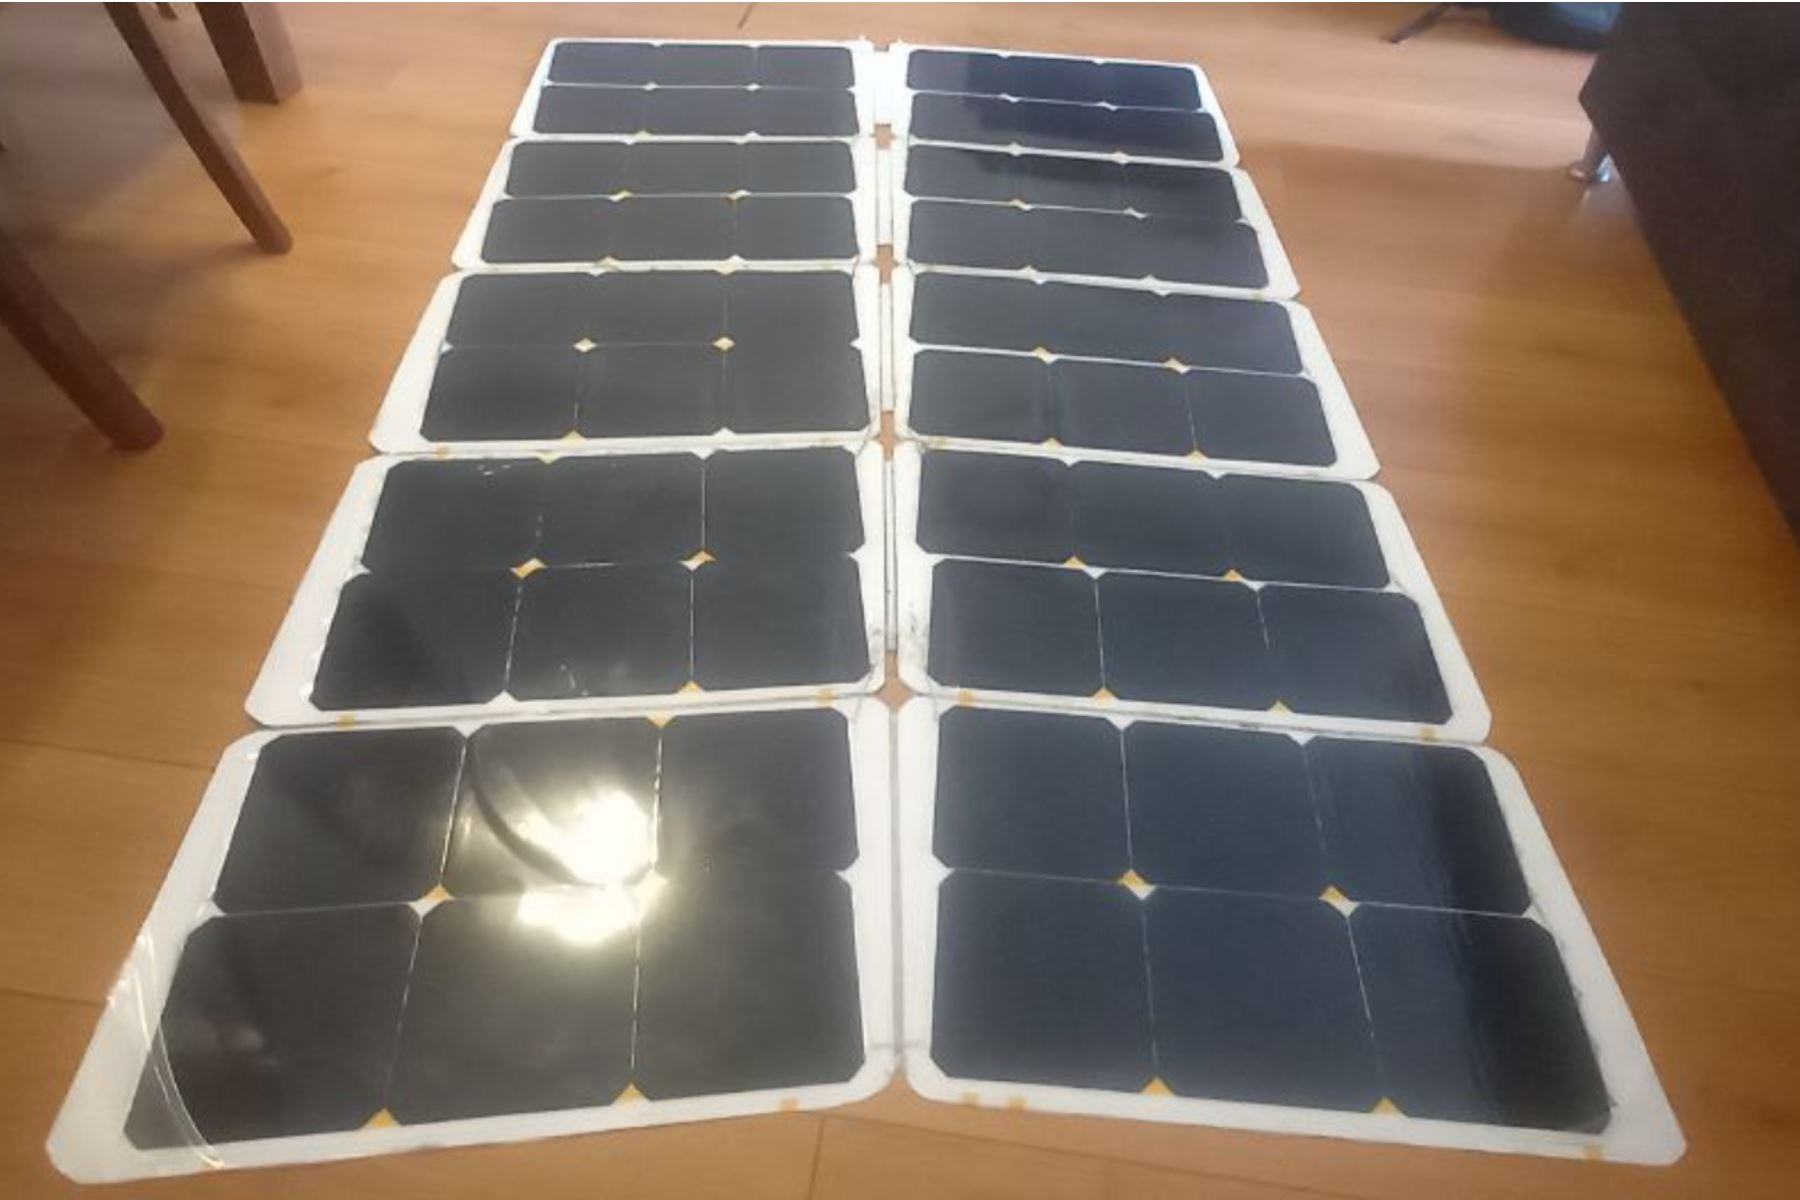 El diseño del prototipo de panel solar plegable está inspirado en el patrón de origami Miura-Ori, utilizado para el despliegue de grandes paneles solares de satélites espaciales.